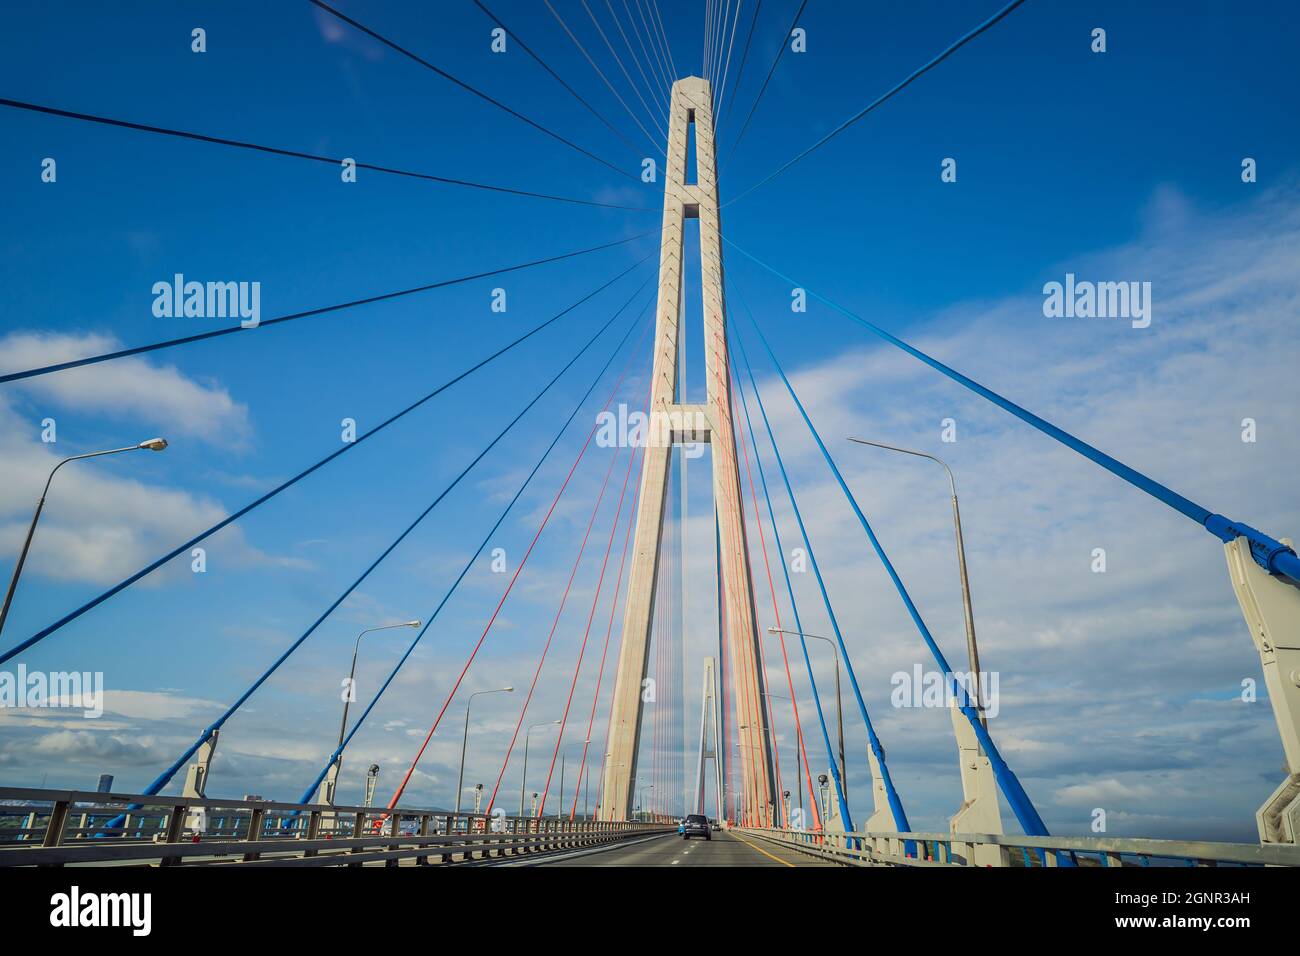 Pont câblé vers l'île russe. Vladivostok. Russie. Vladivostok est le plus grand port de la côte pacifique de la Russie et le centre du Forum de l'APEC Banque D'Images